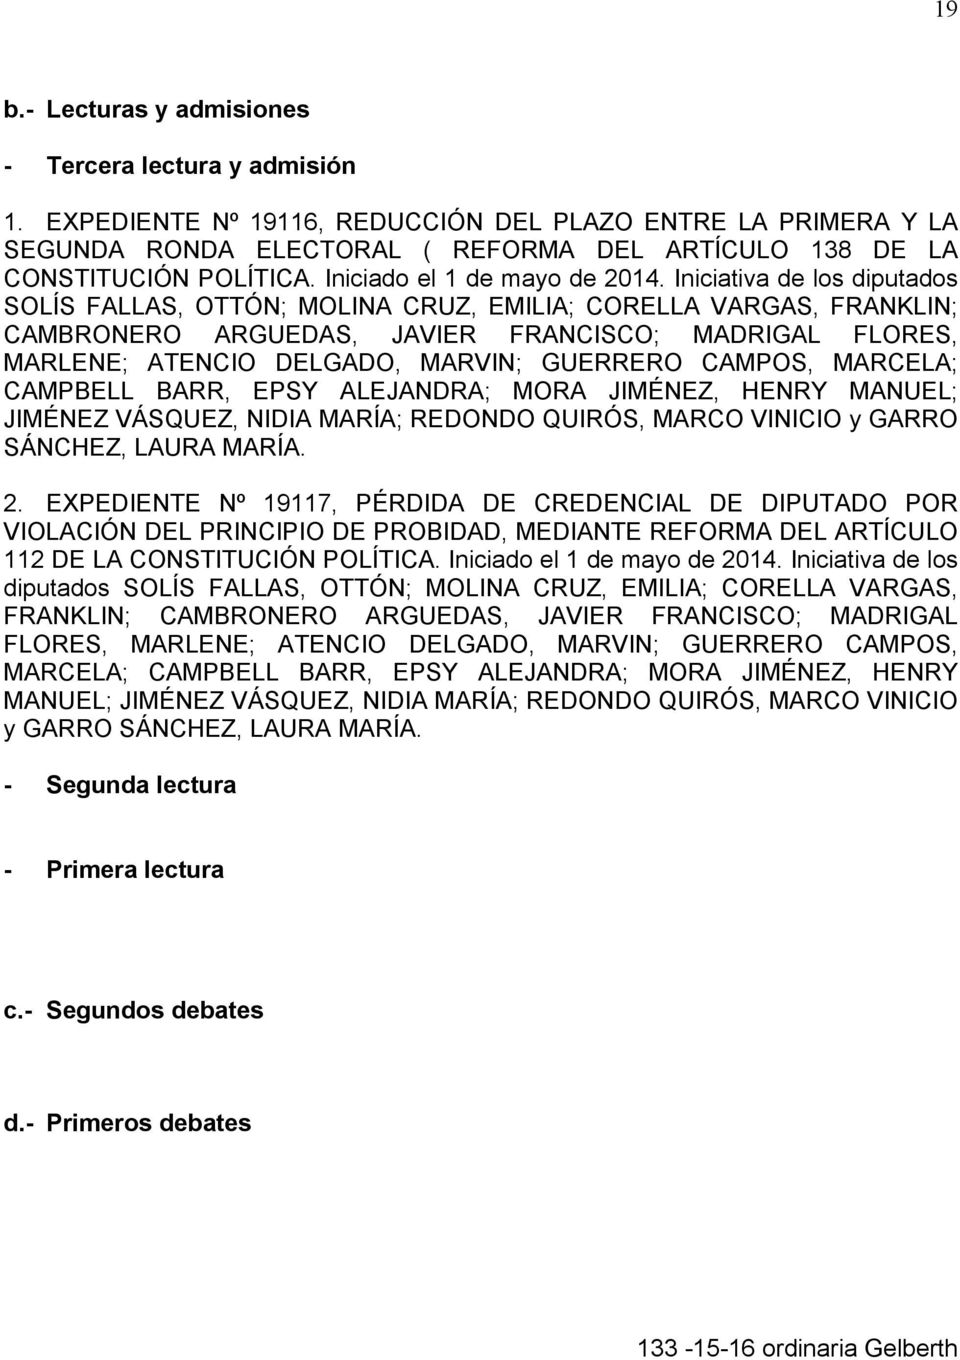 Iniciativa de los diputados SOLÍS FALLAS, OTTÓN; MOLINA CRUZ, EMILIA; CORELLA VARGAS, FRANKLIN; CAMBRONERO ARGUEDAS, JAVIER FRANCISCO; MADRIGAL FLORES, MARLENE; ATENCIO DELGADO, MARVIN; GUERRERO